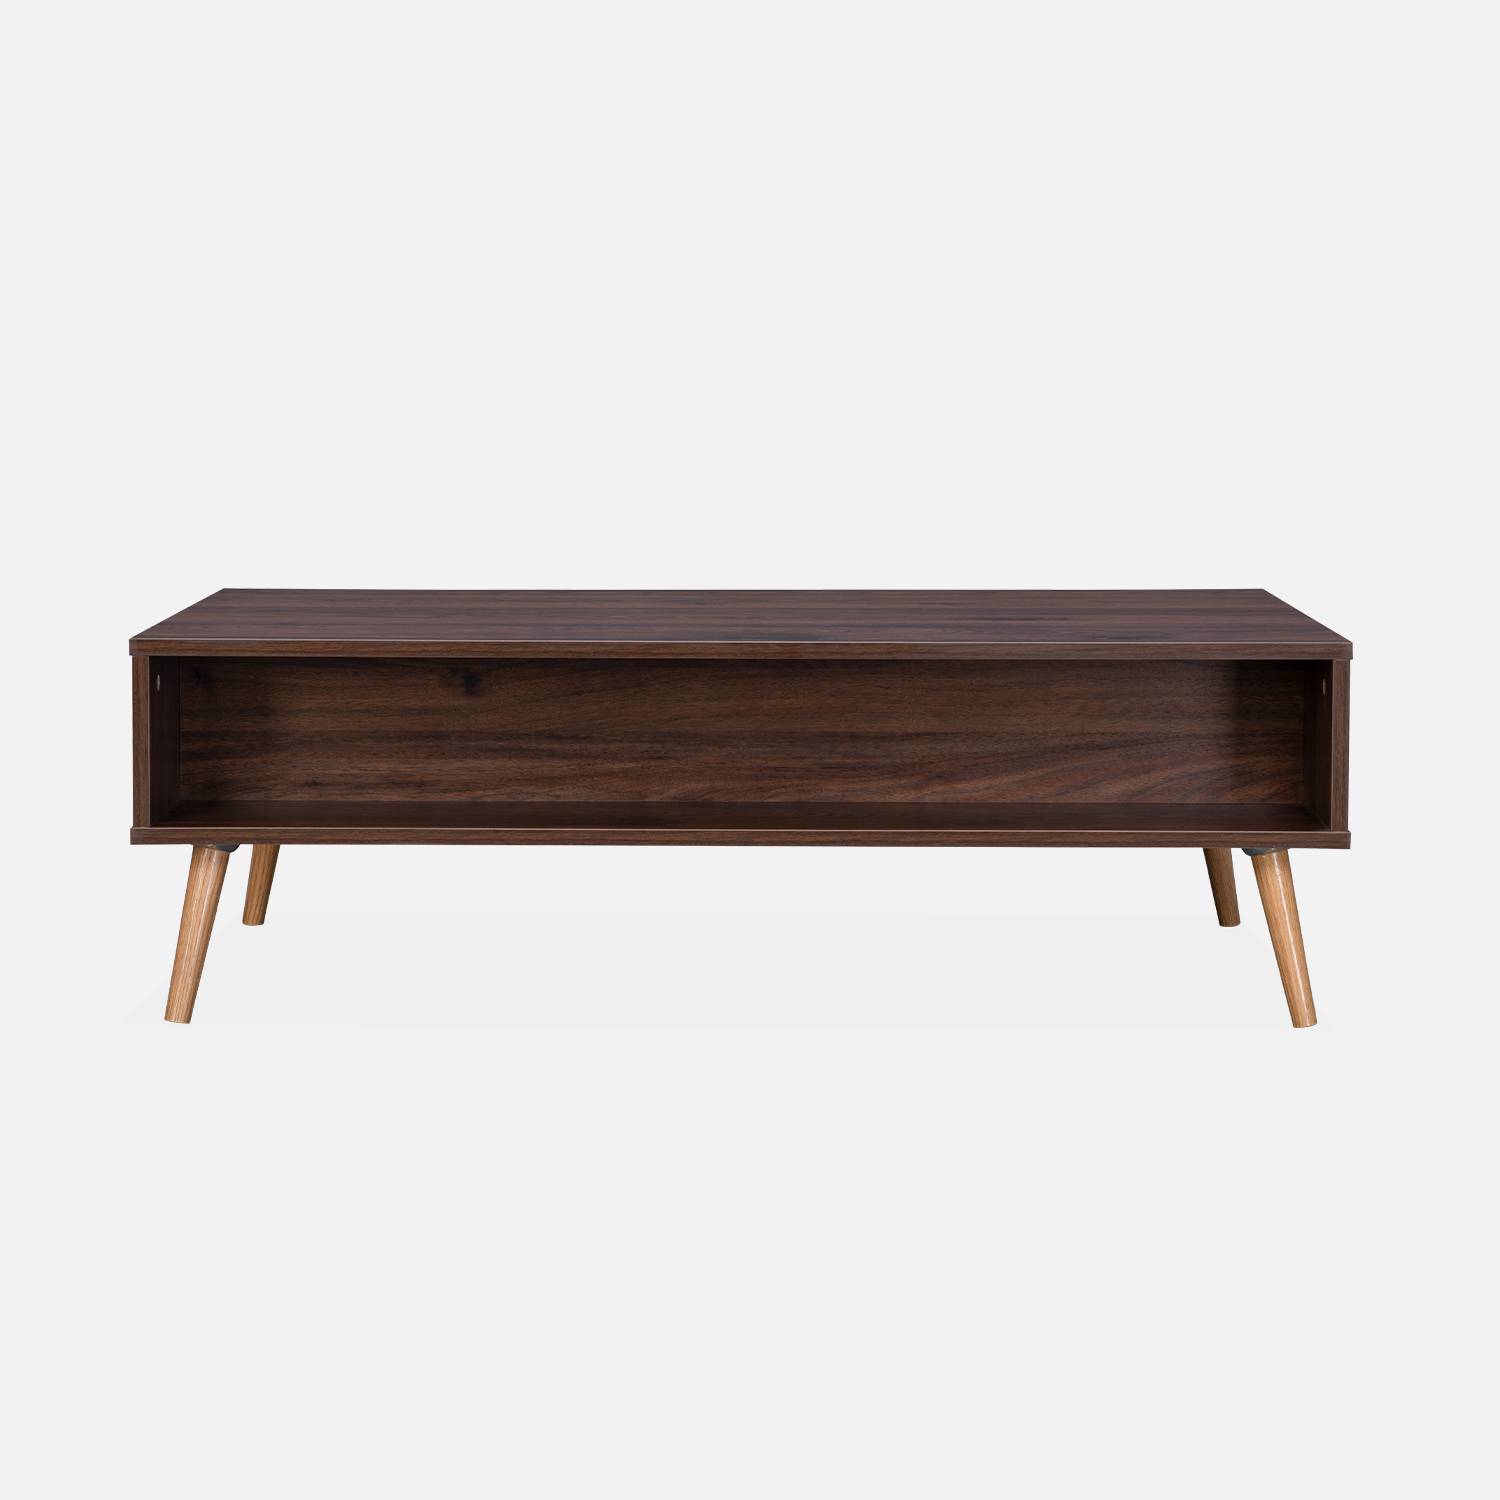 Table basse en cannage 110x59x39cm - Bohème - Couleur bois foncé, 1 tiroir, 1 espace de rangement, pieds scandinaves Photo5